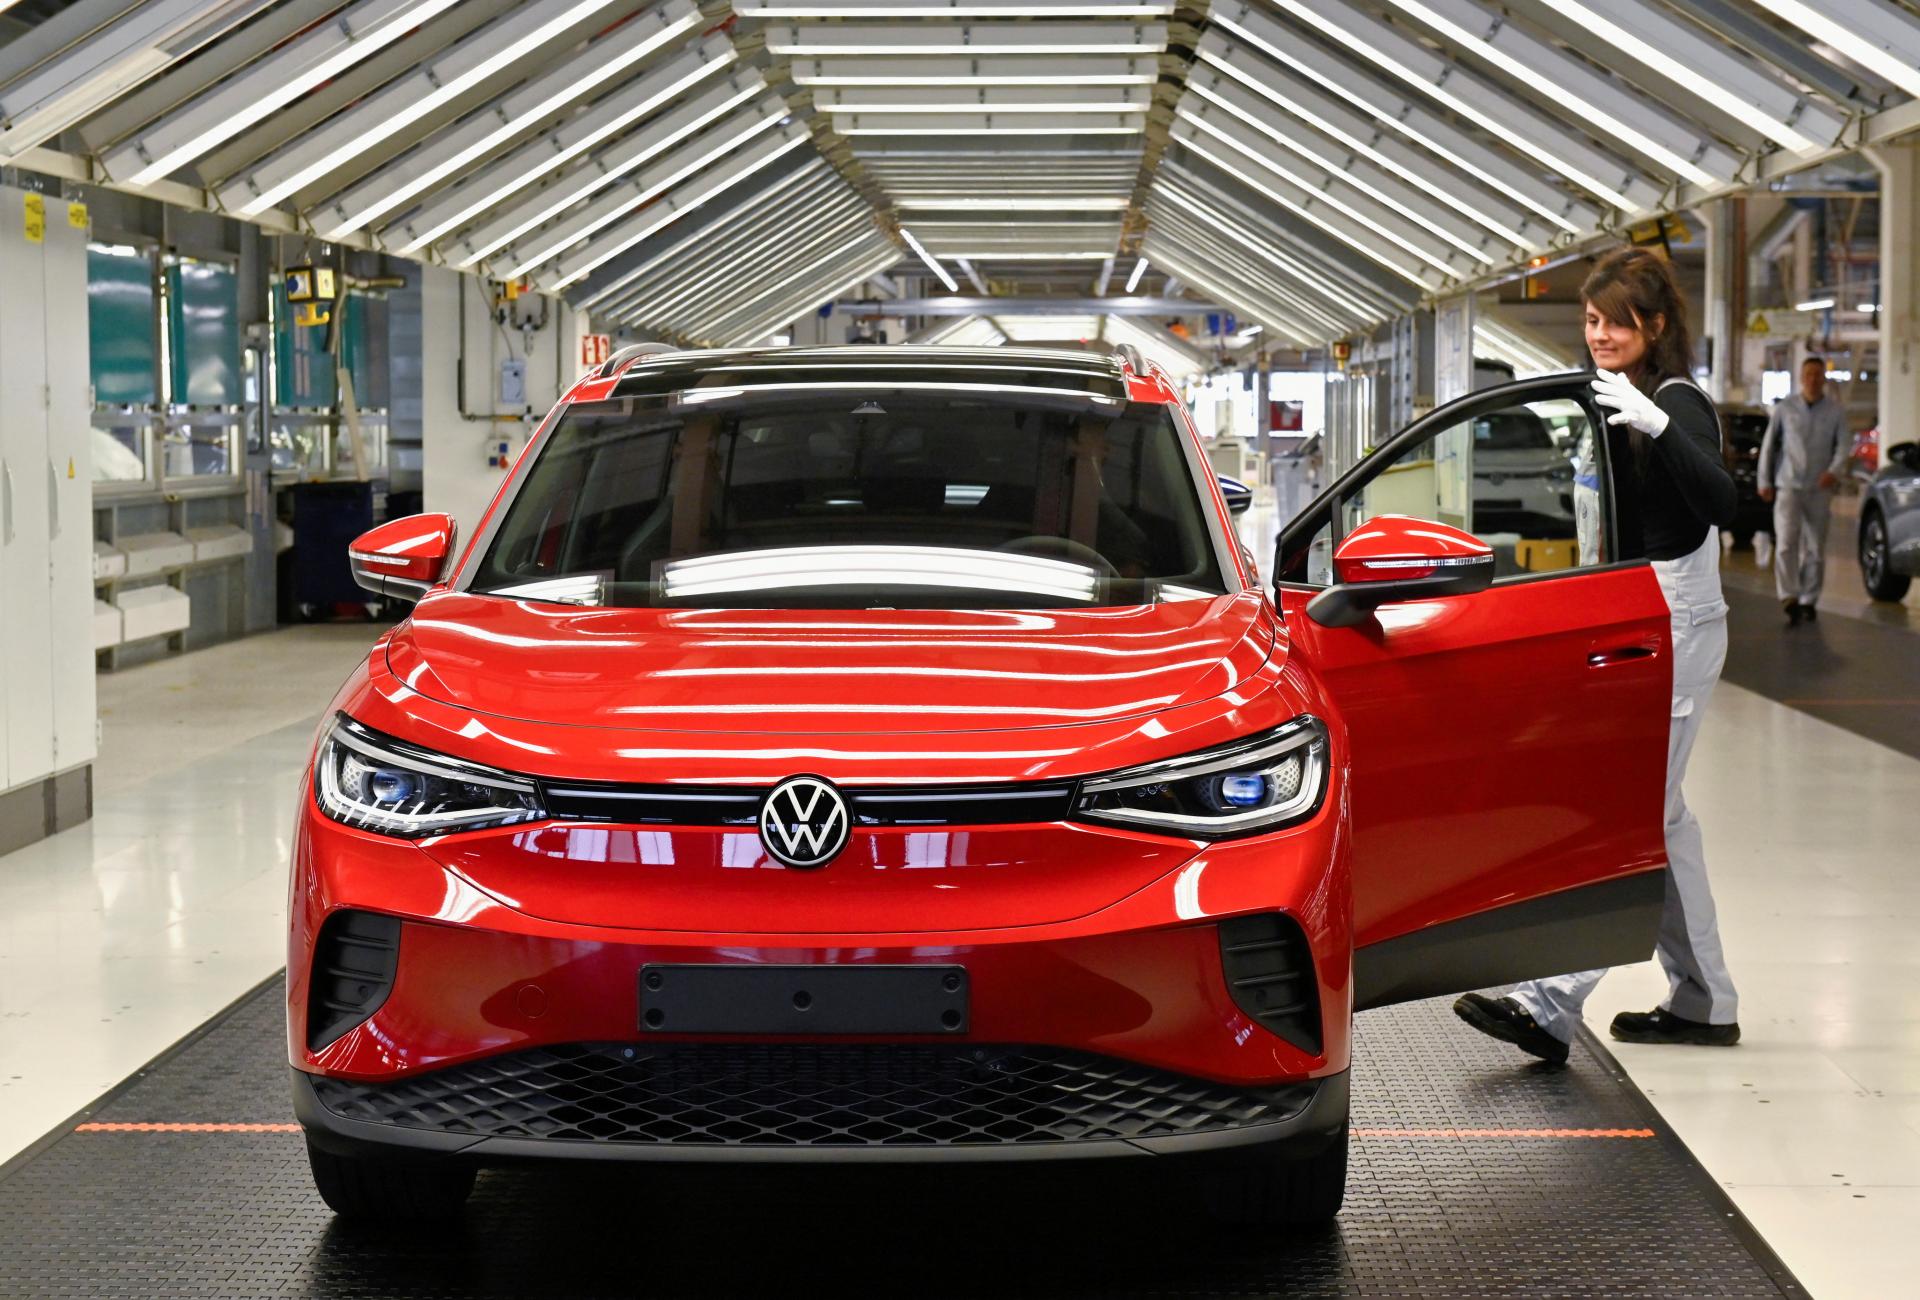 Zistenie HN: Vo Volkswagene úraduje inflačná doložka. Mzdy porastú takmer o 200 eur